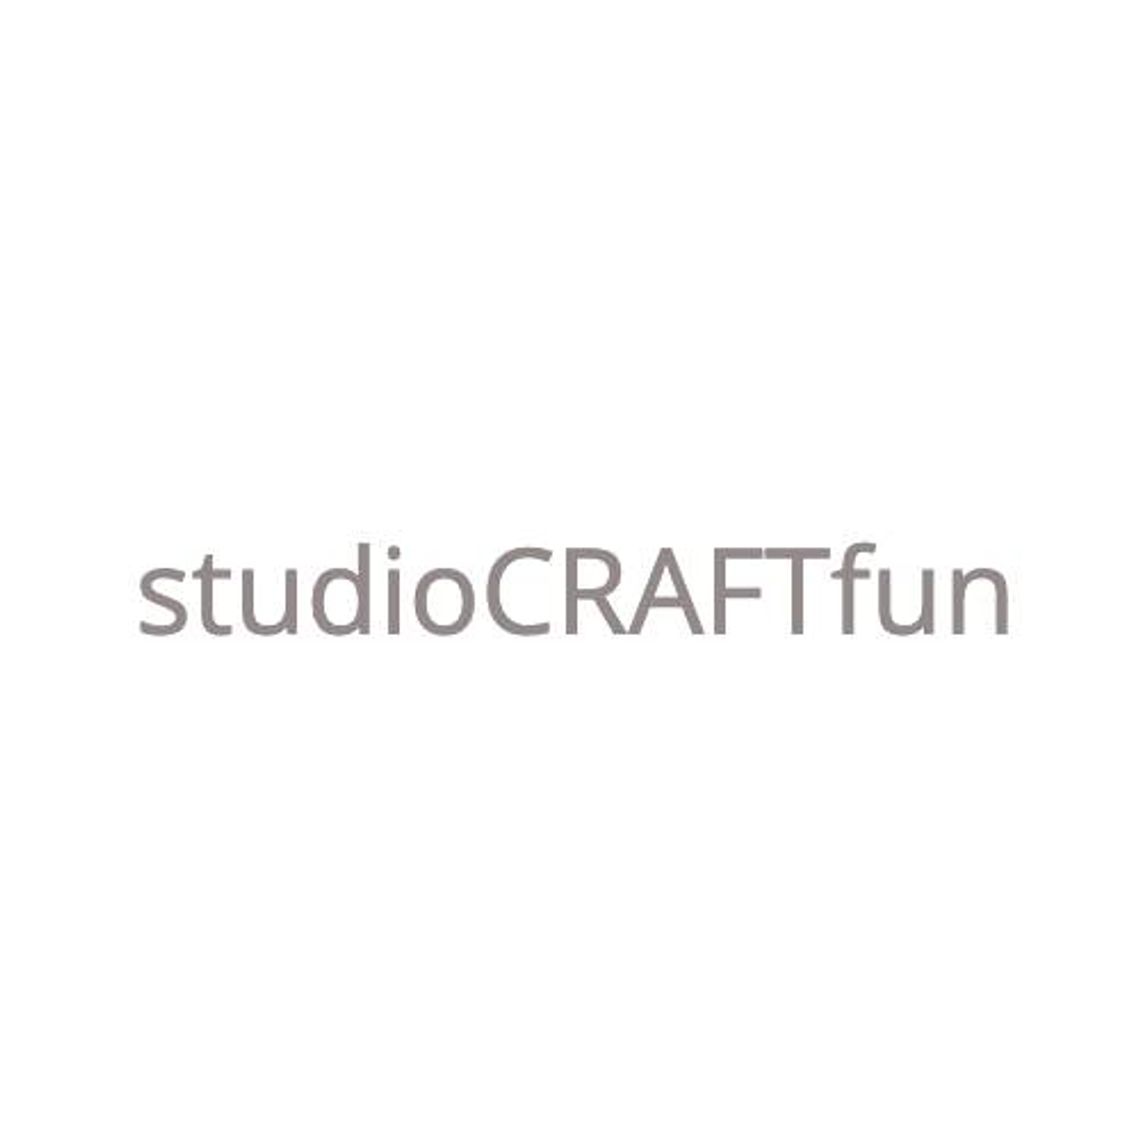 CRAFTFun Studio - artykuły dekoracyjne i ślubne